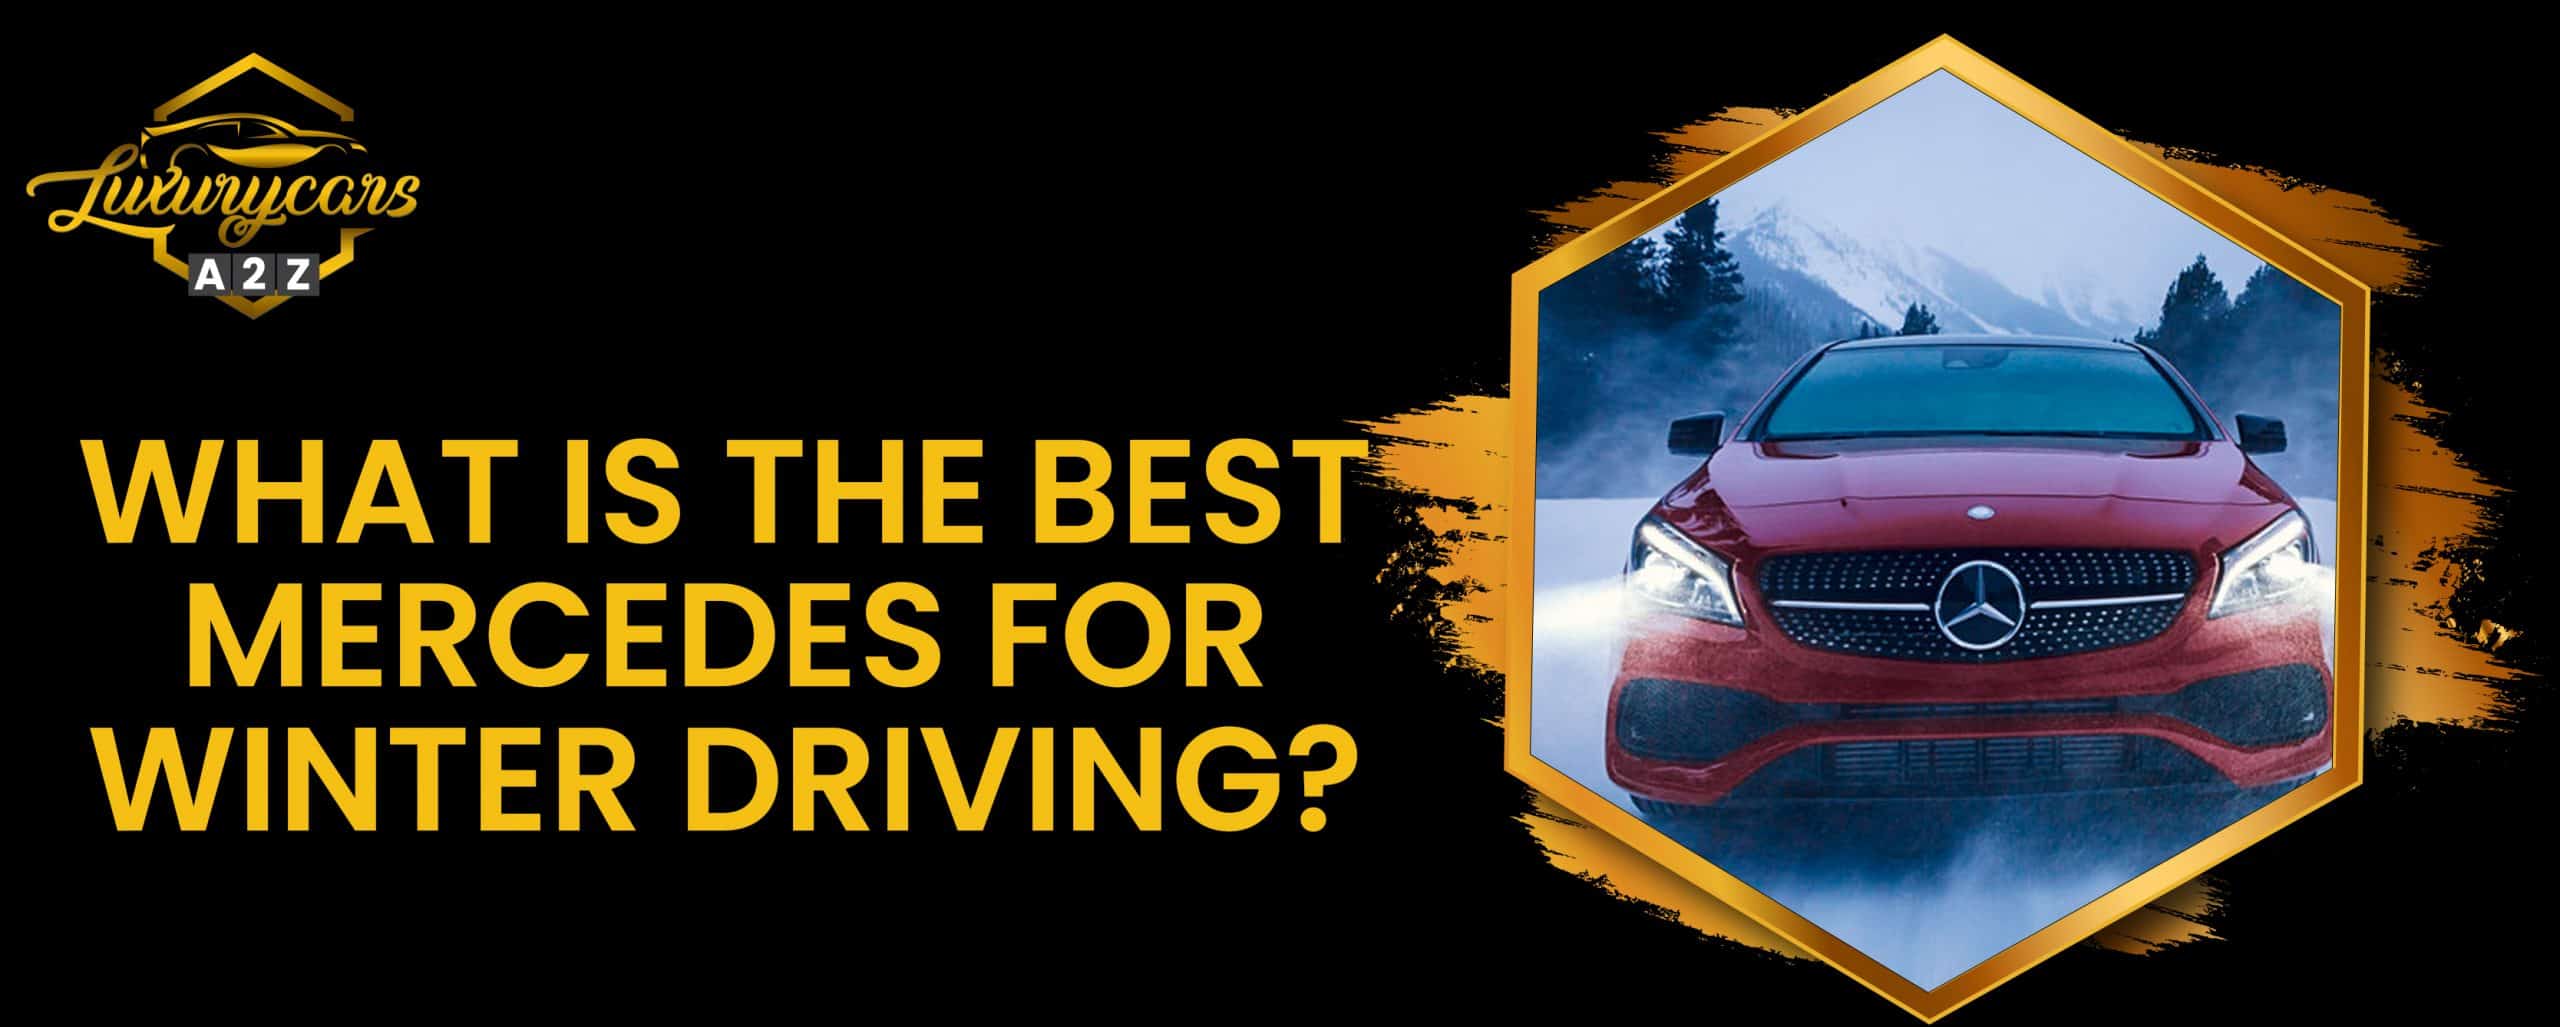 Quelle est la meilleure Mercedes pour la conduite en hiver ?